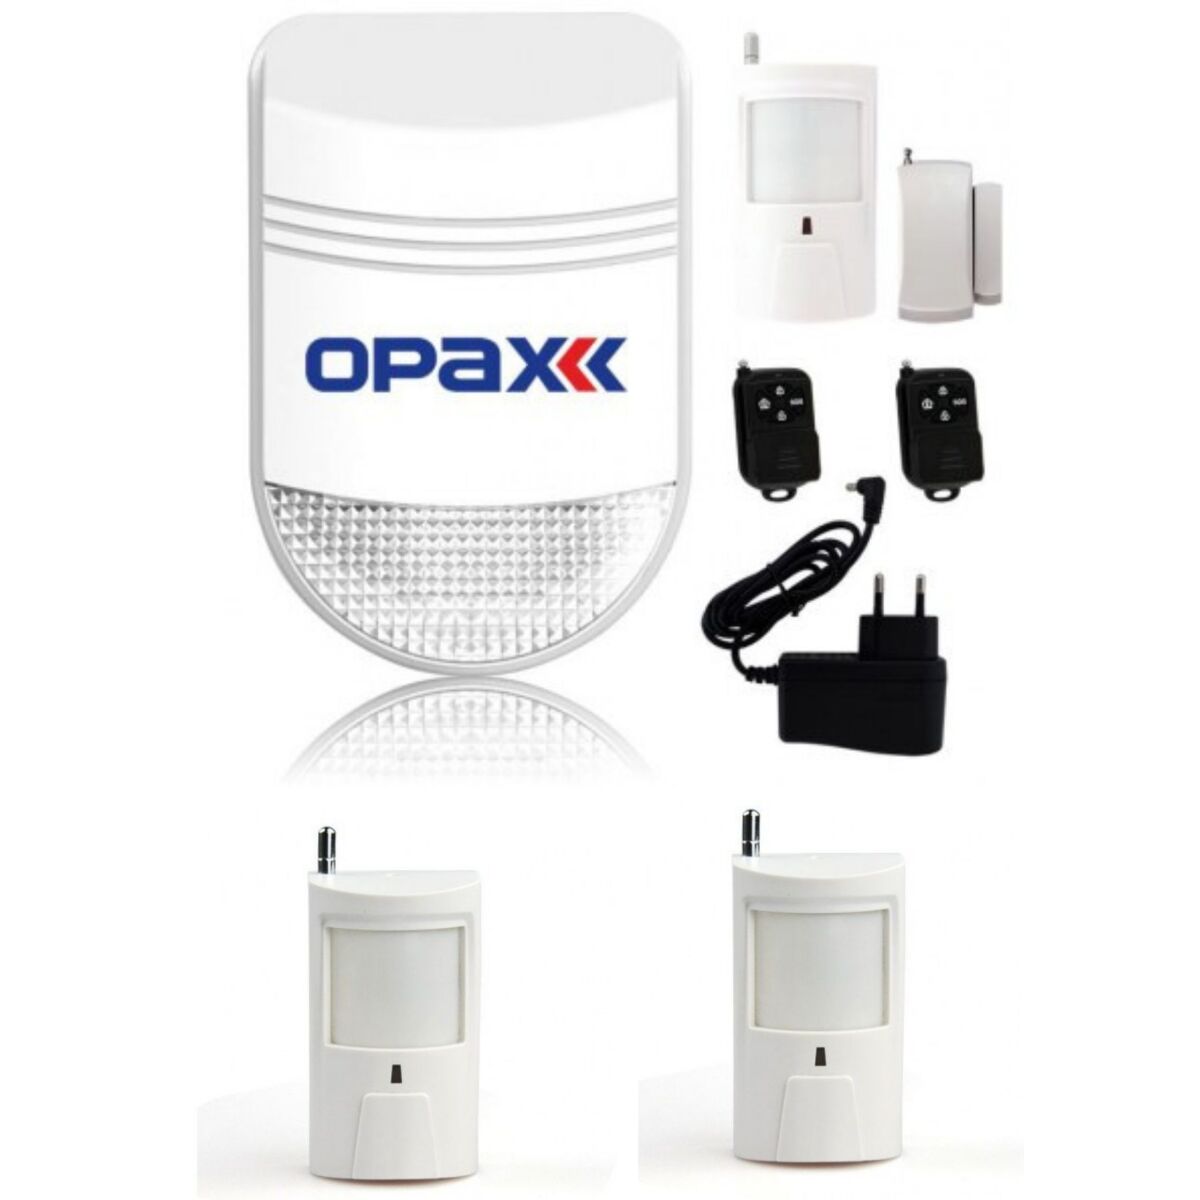 Opax Kablosuz Alarm 4'Lü Set